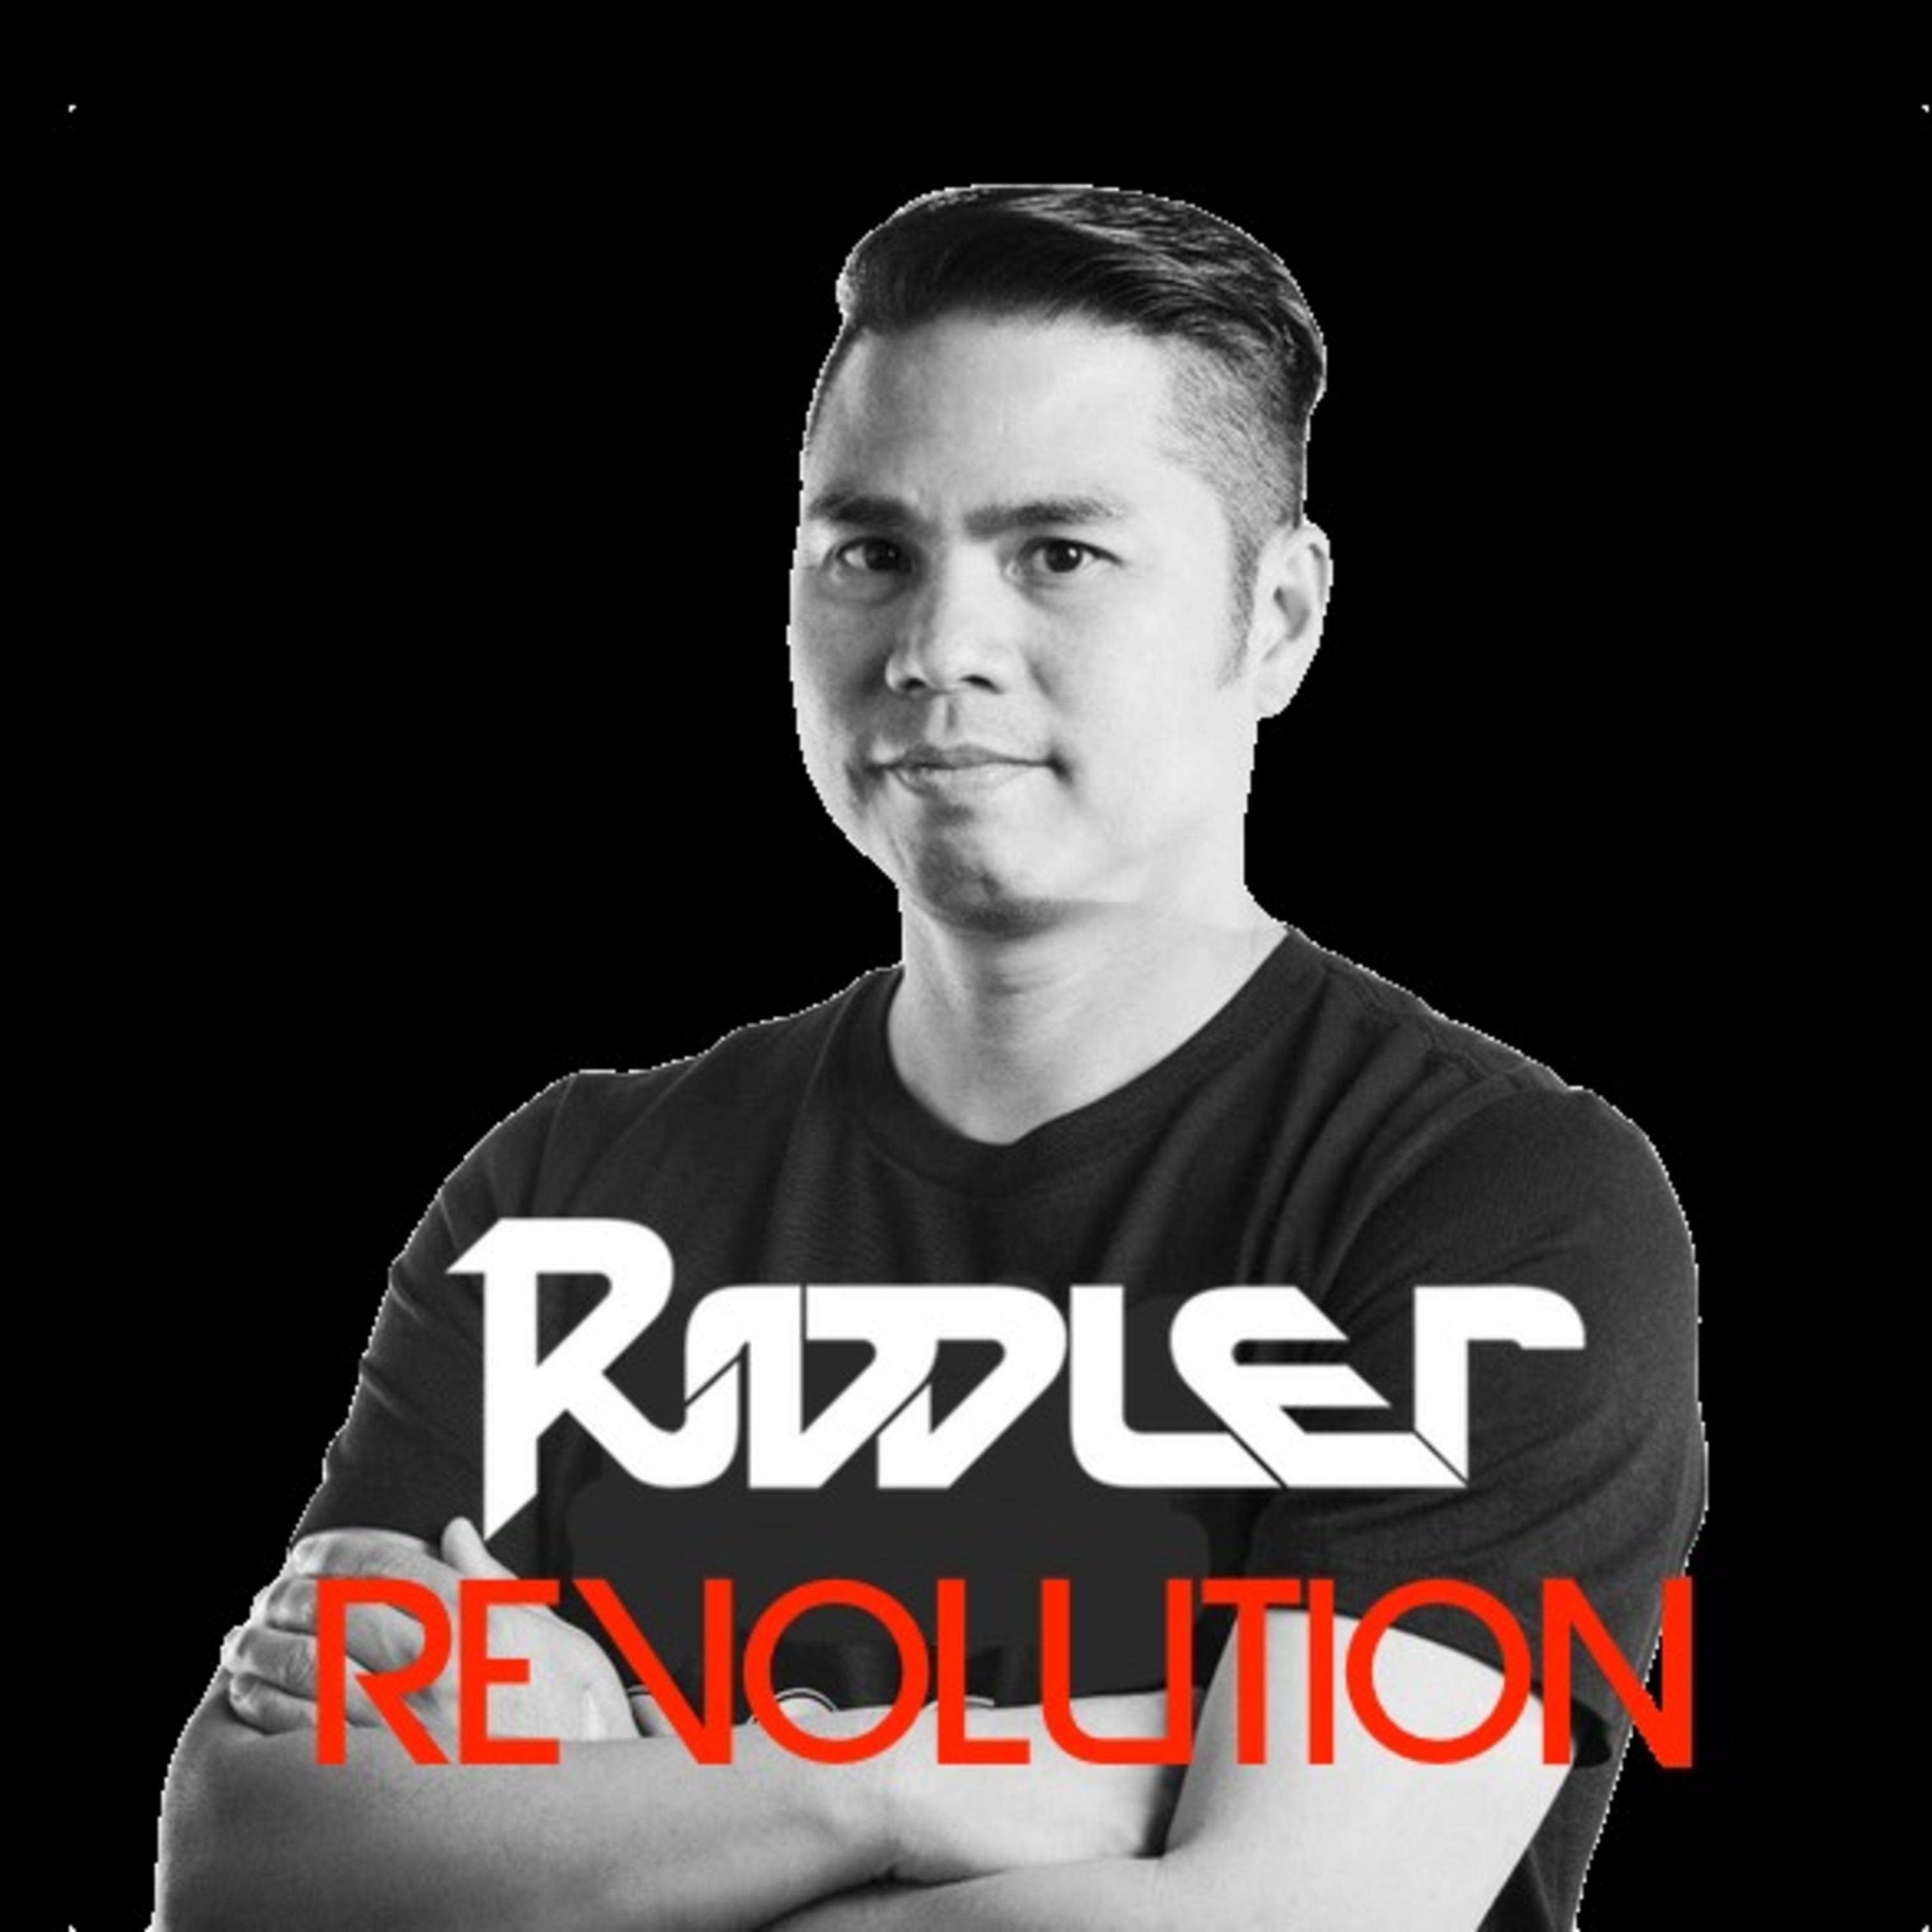 Riddler's Revolution